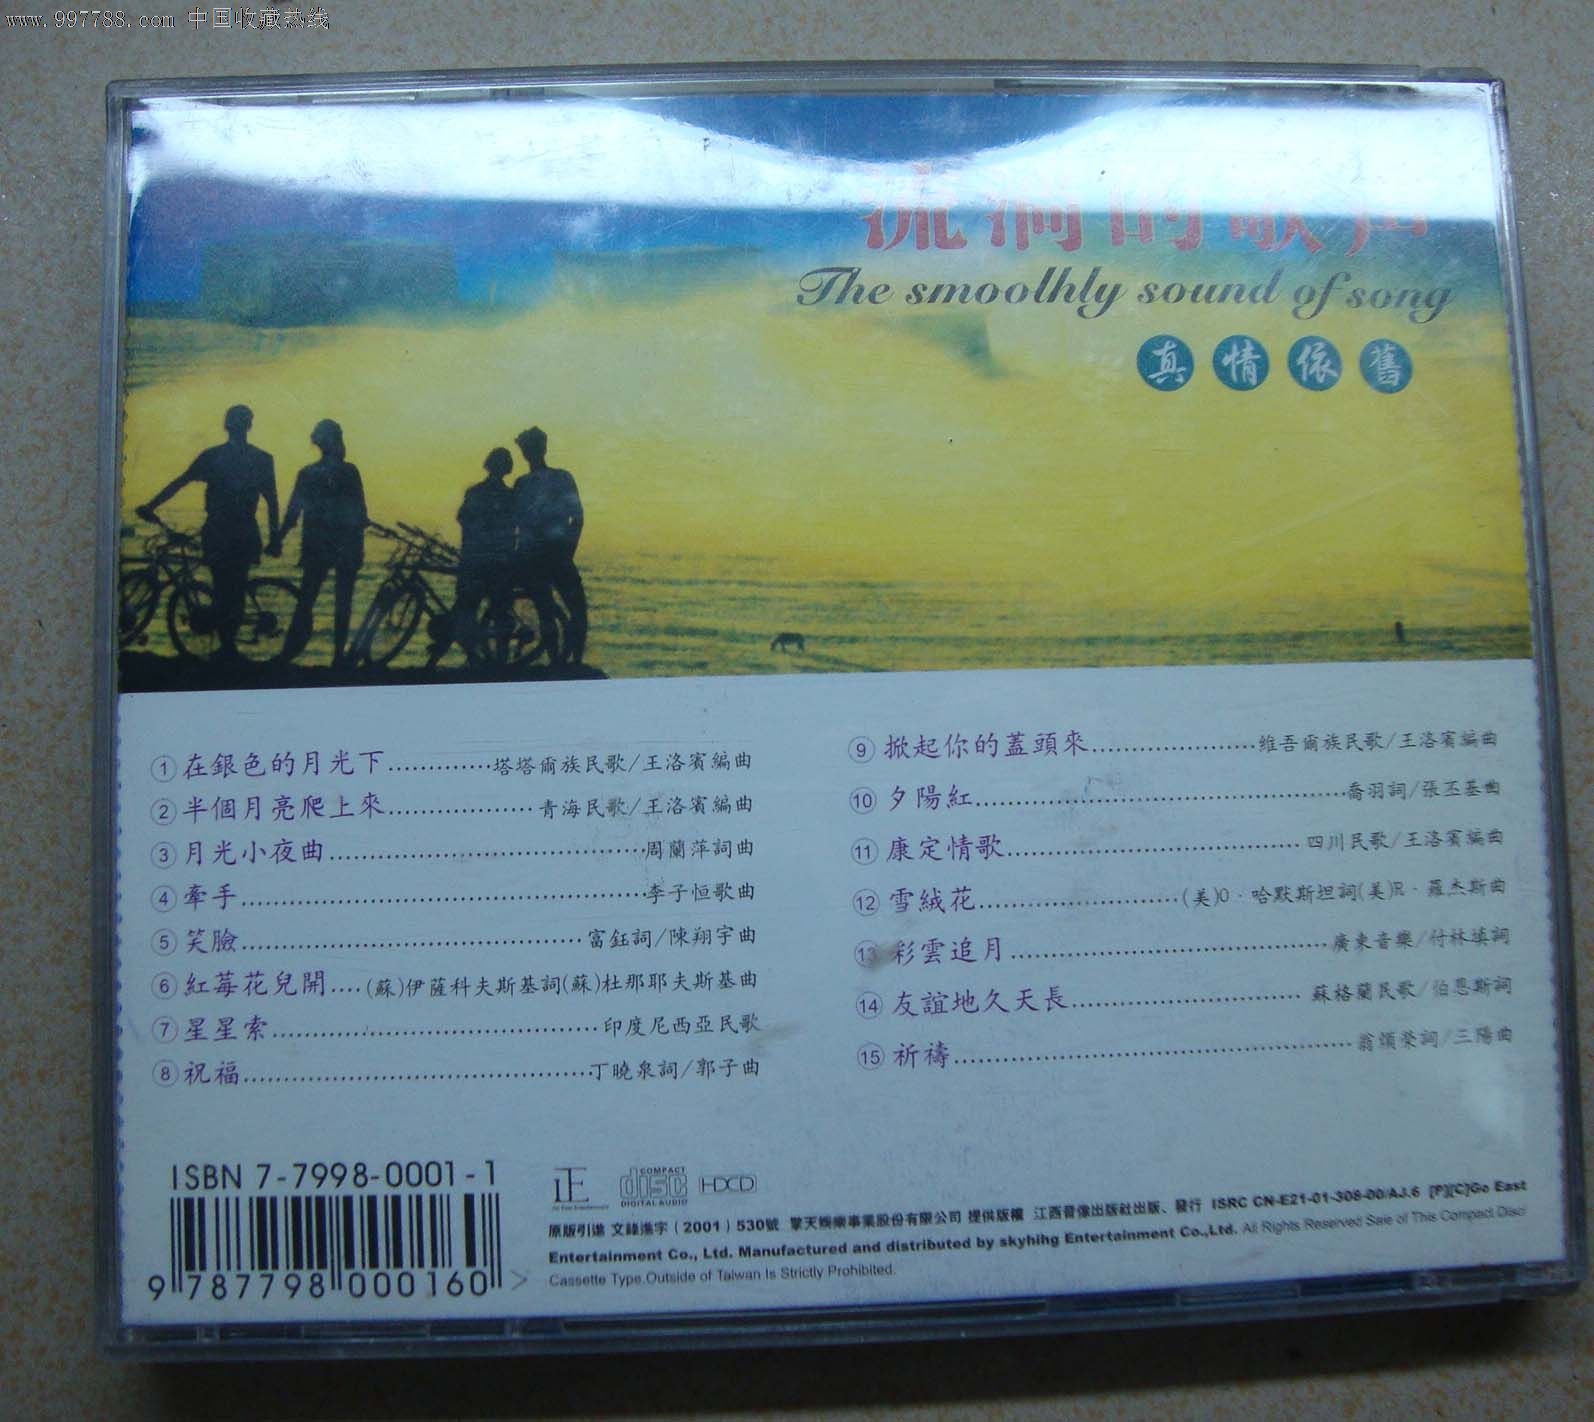 流淌的歌声-价格:10元-se15116604-音乐CD-零